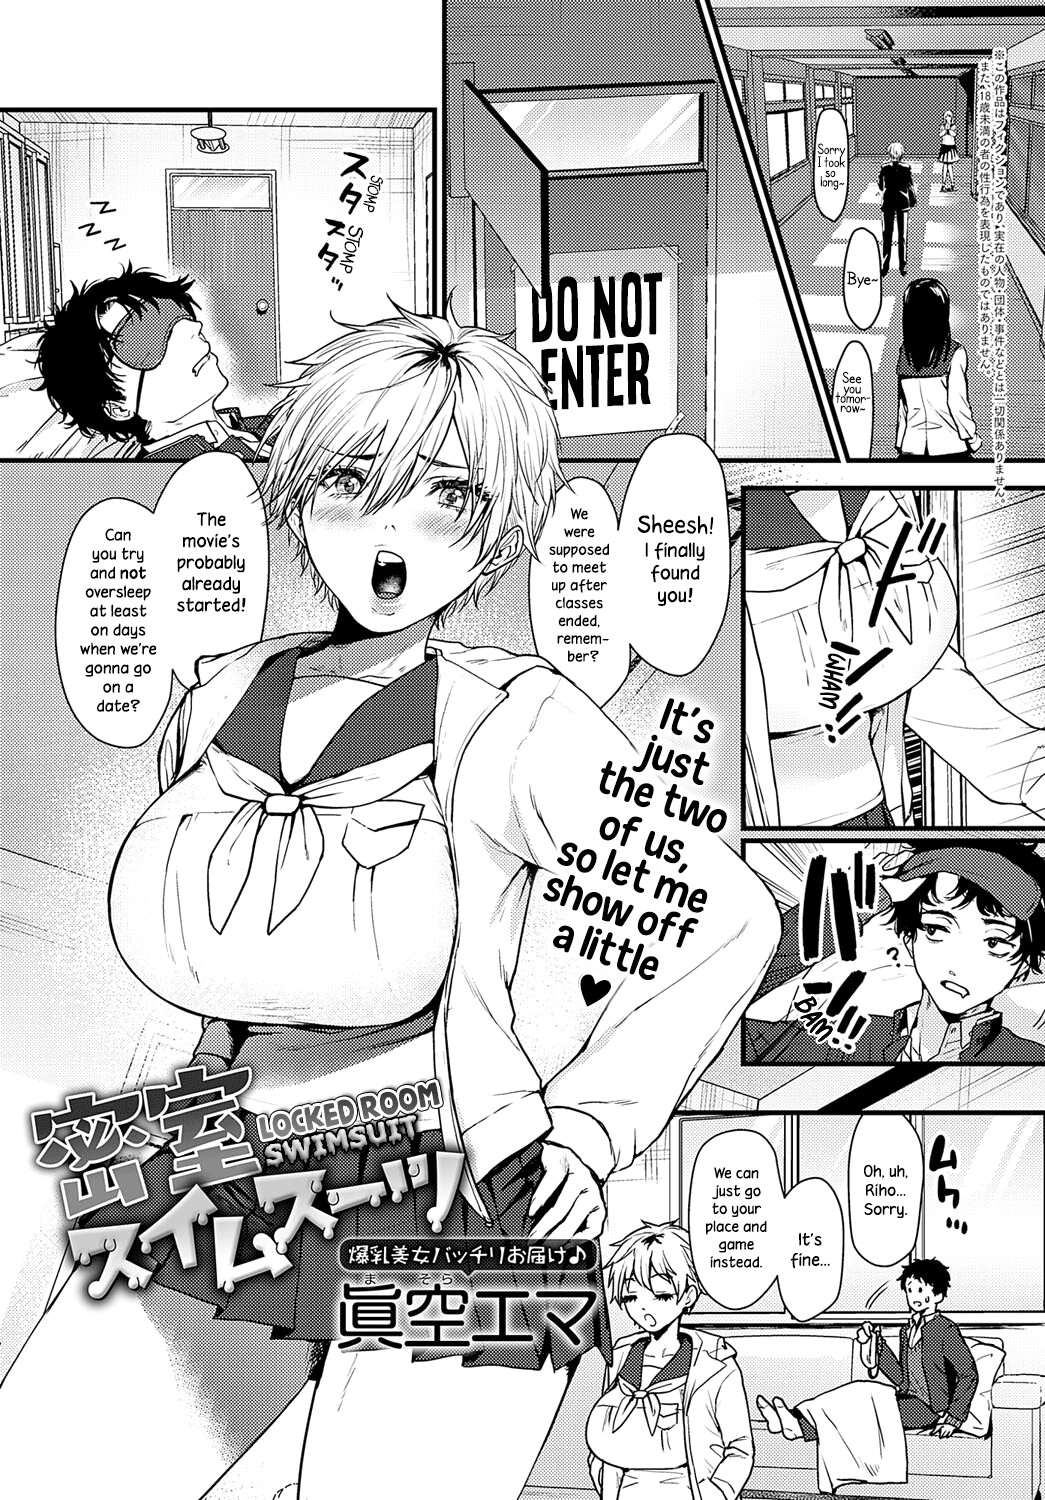 Hentai Manga Comic-Locked Room Swimsuit-Read-1